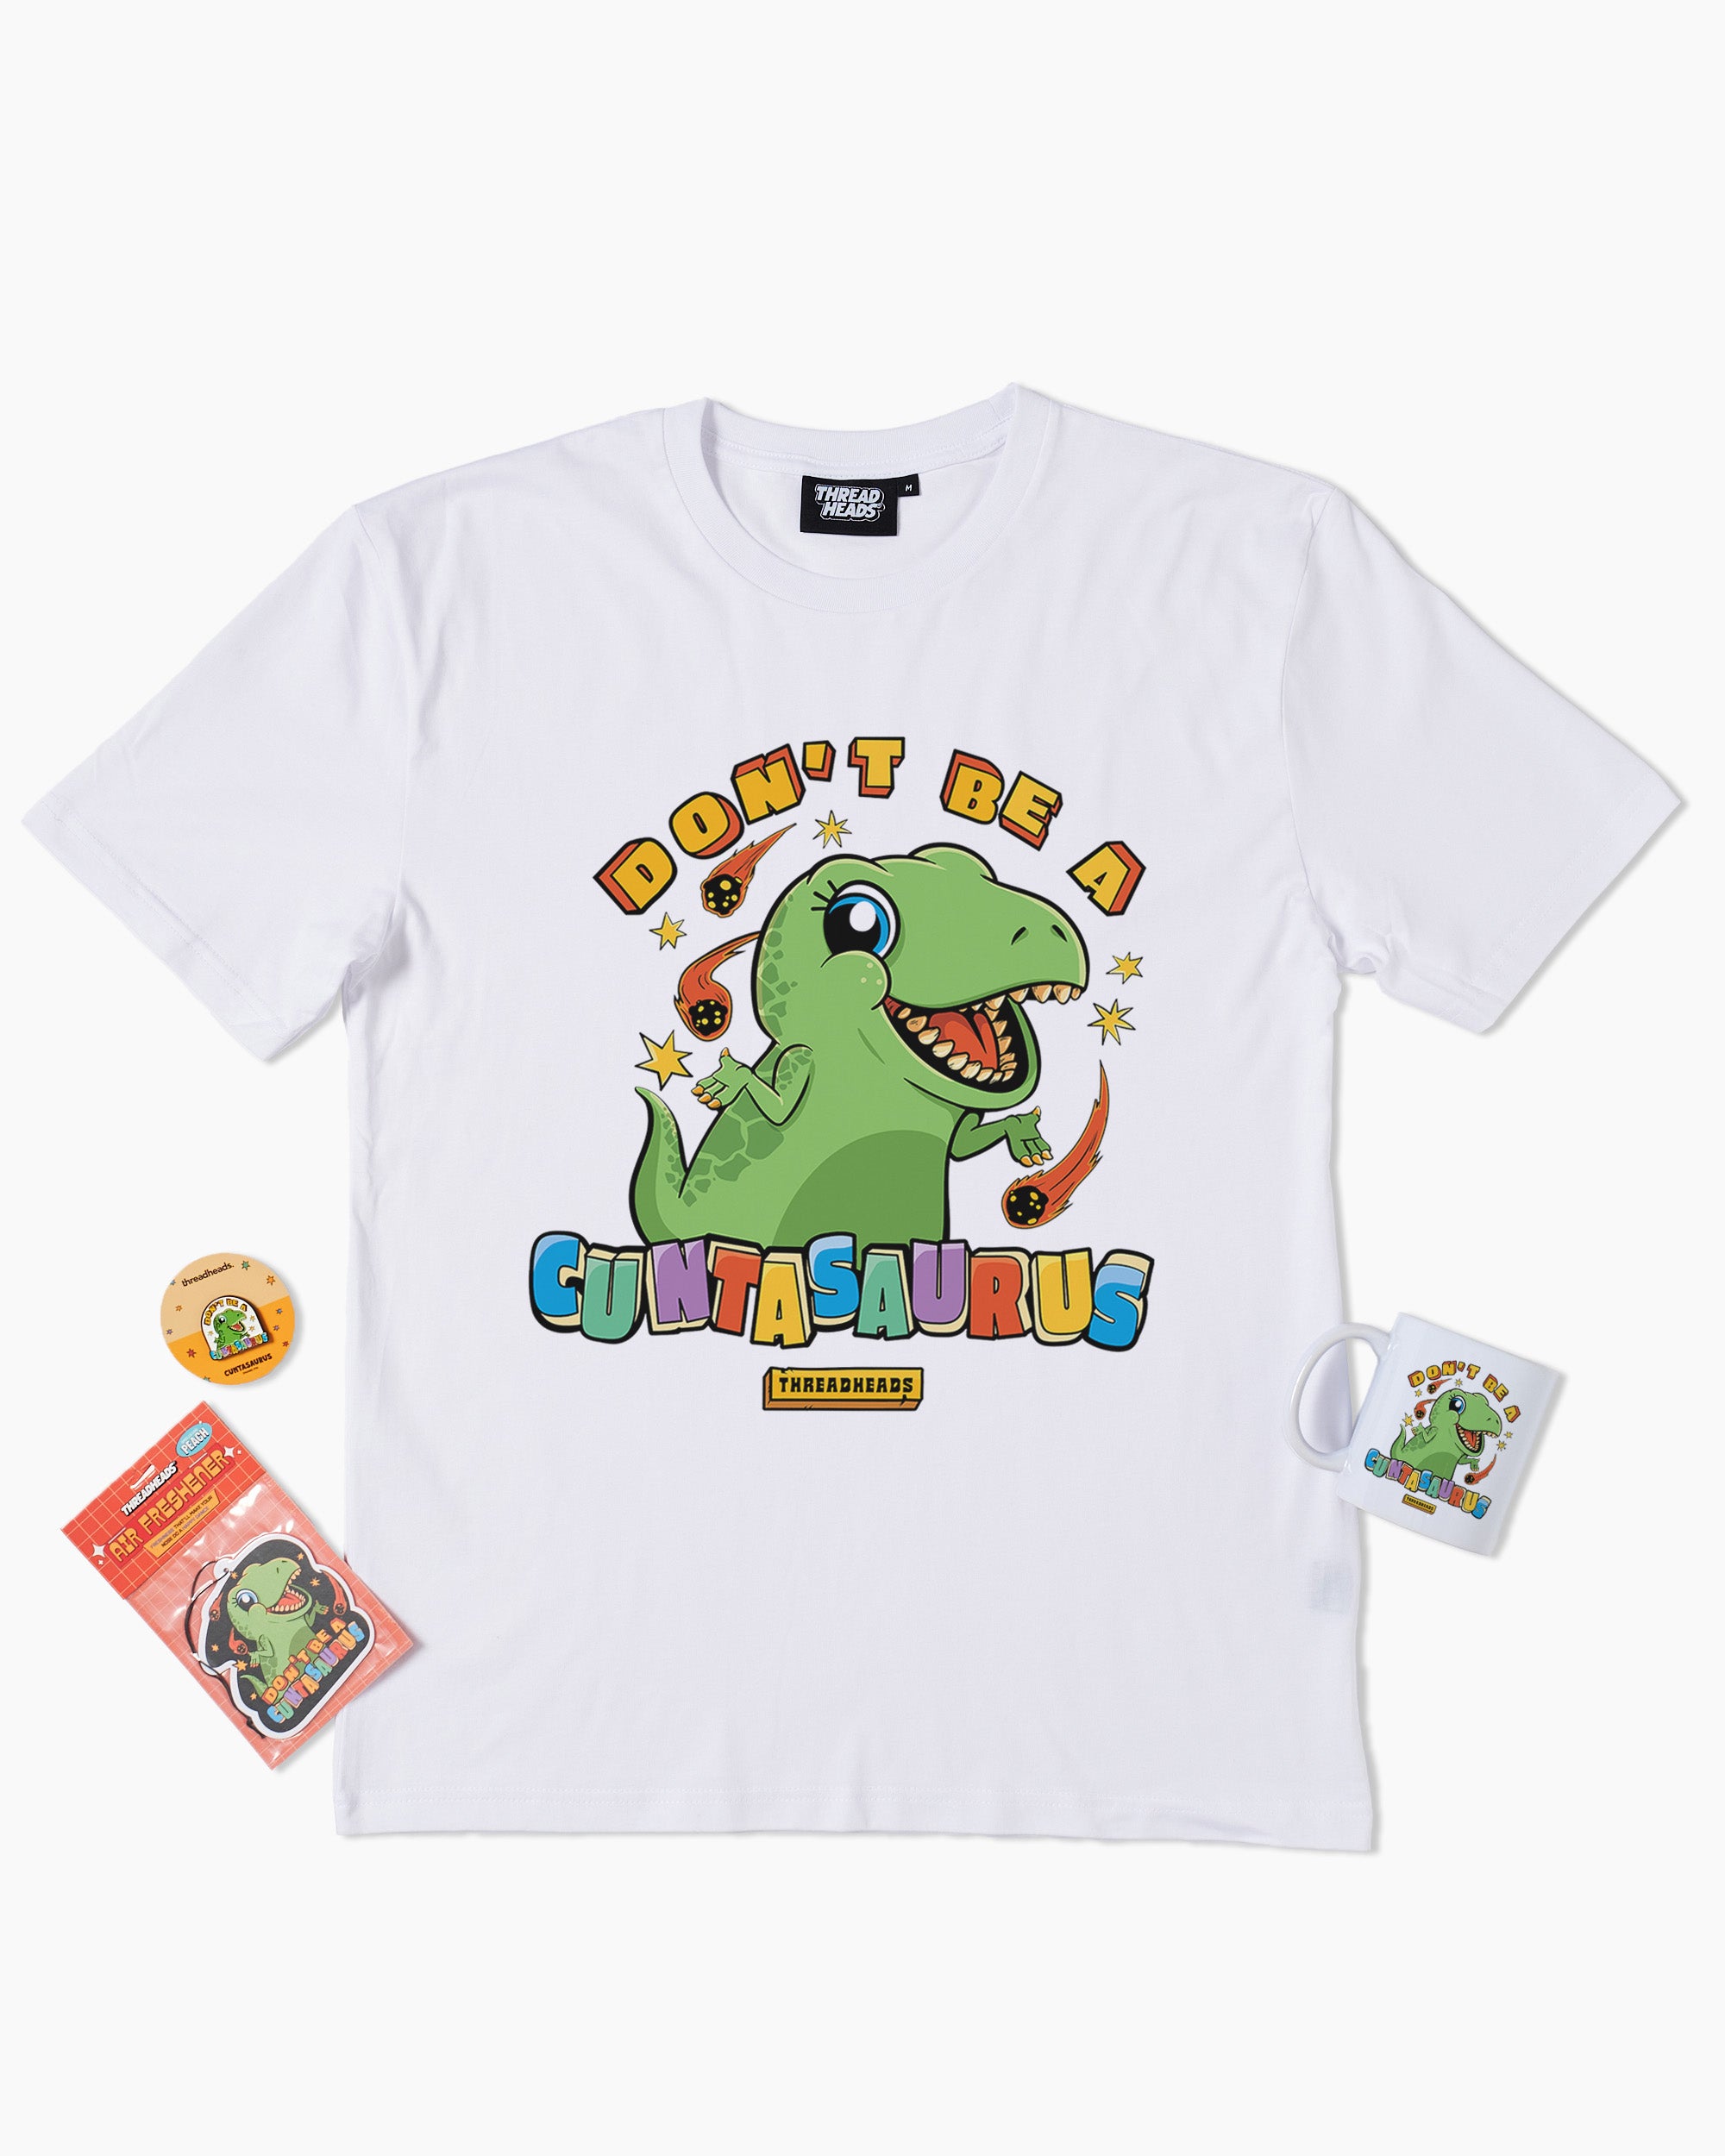 Cuntasaurus Bundle | T-Shirt, Pin, Mug & Air Freshener Bundle